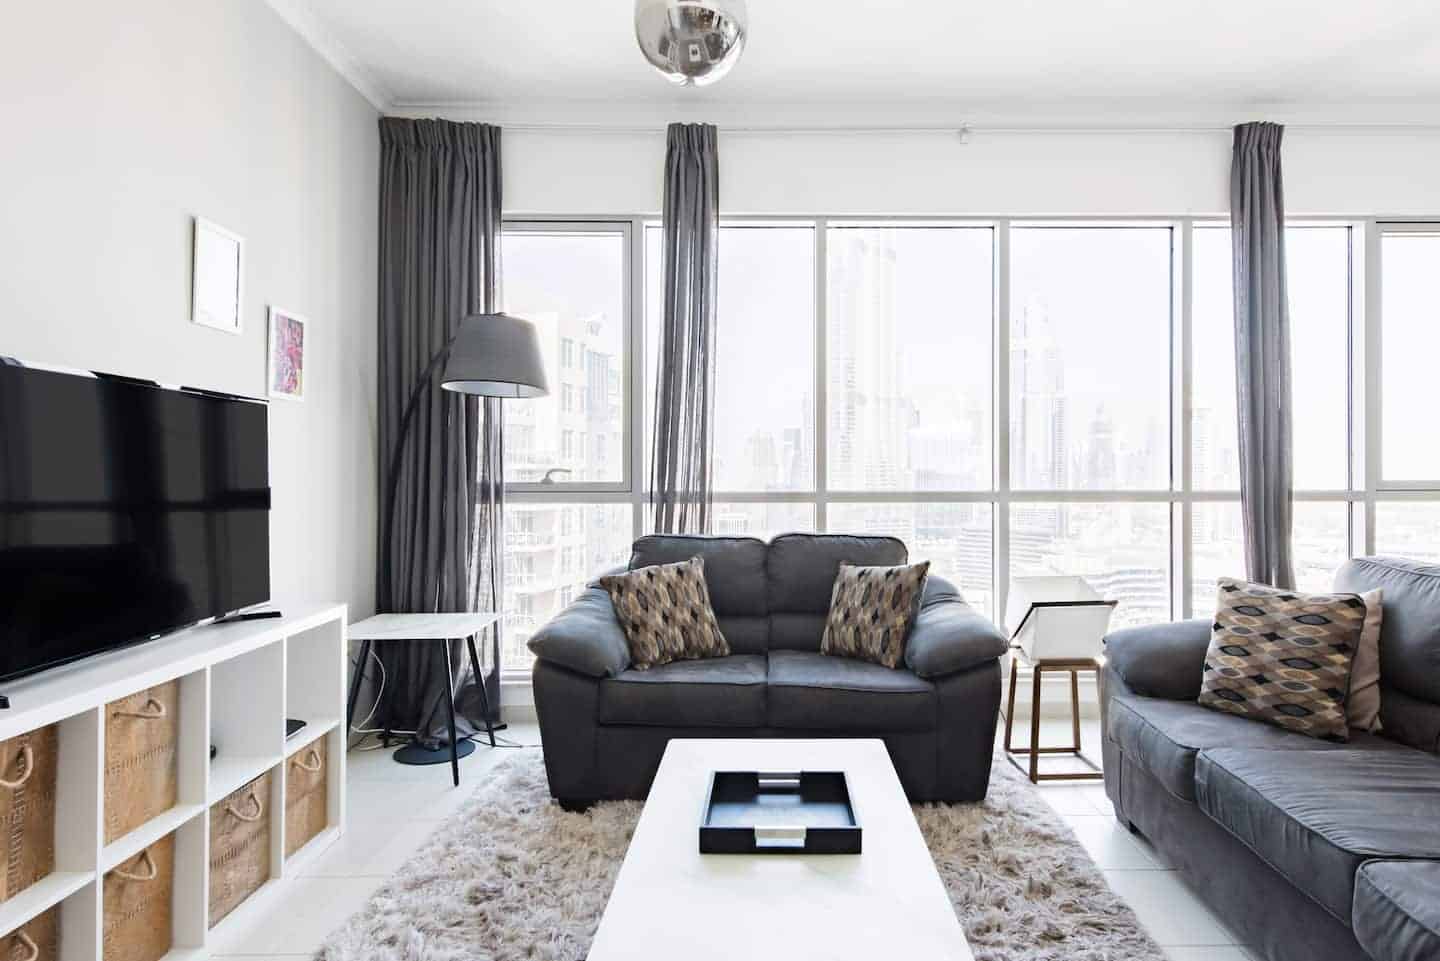 Image of Airbnb rental in Dubai, United Arab Emirates